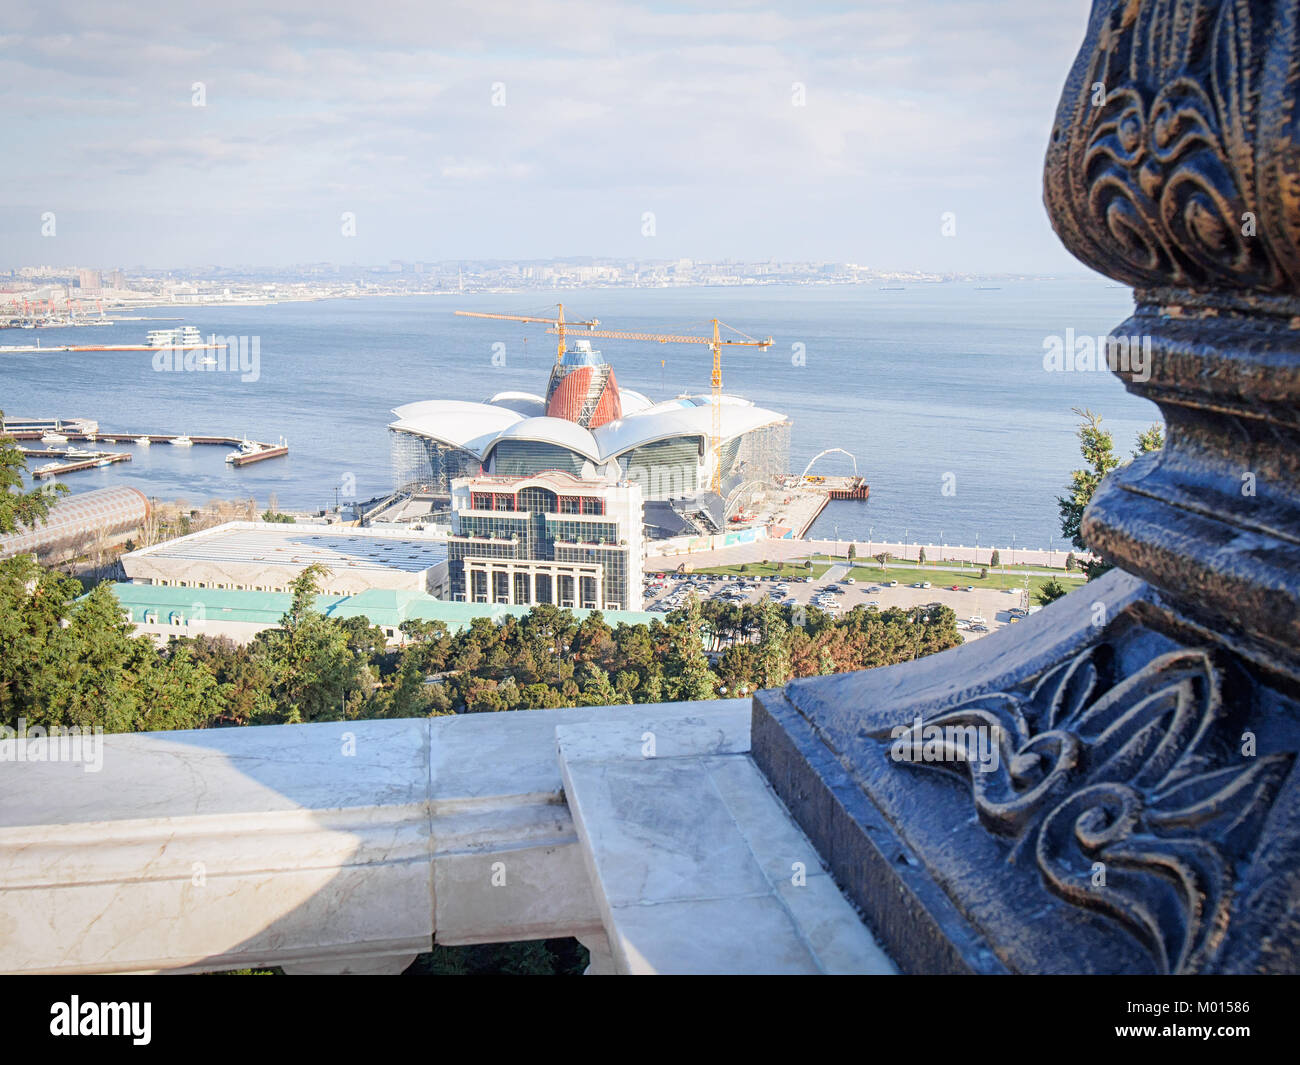 BAKU, Aserbaidschan - Dezember 27, 2017: Baku am Kaspischen Meer Mall Bau Blick von oben. Stockfoto